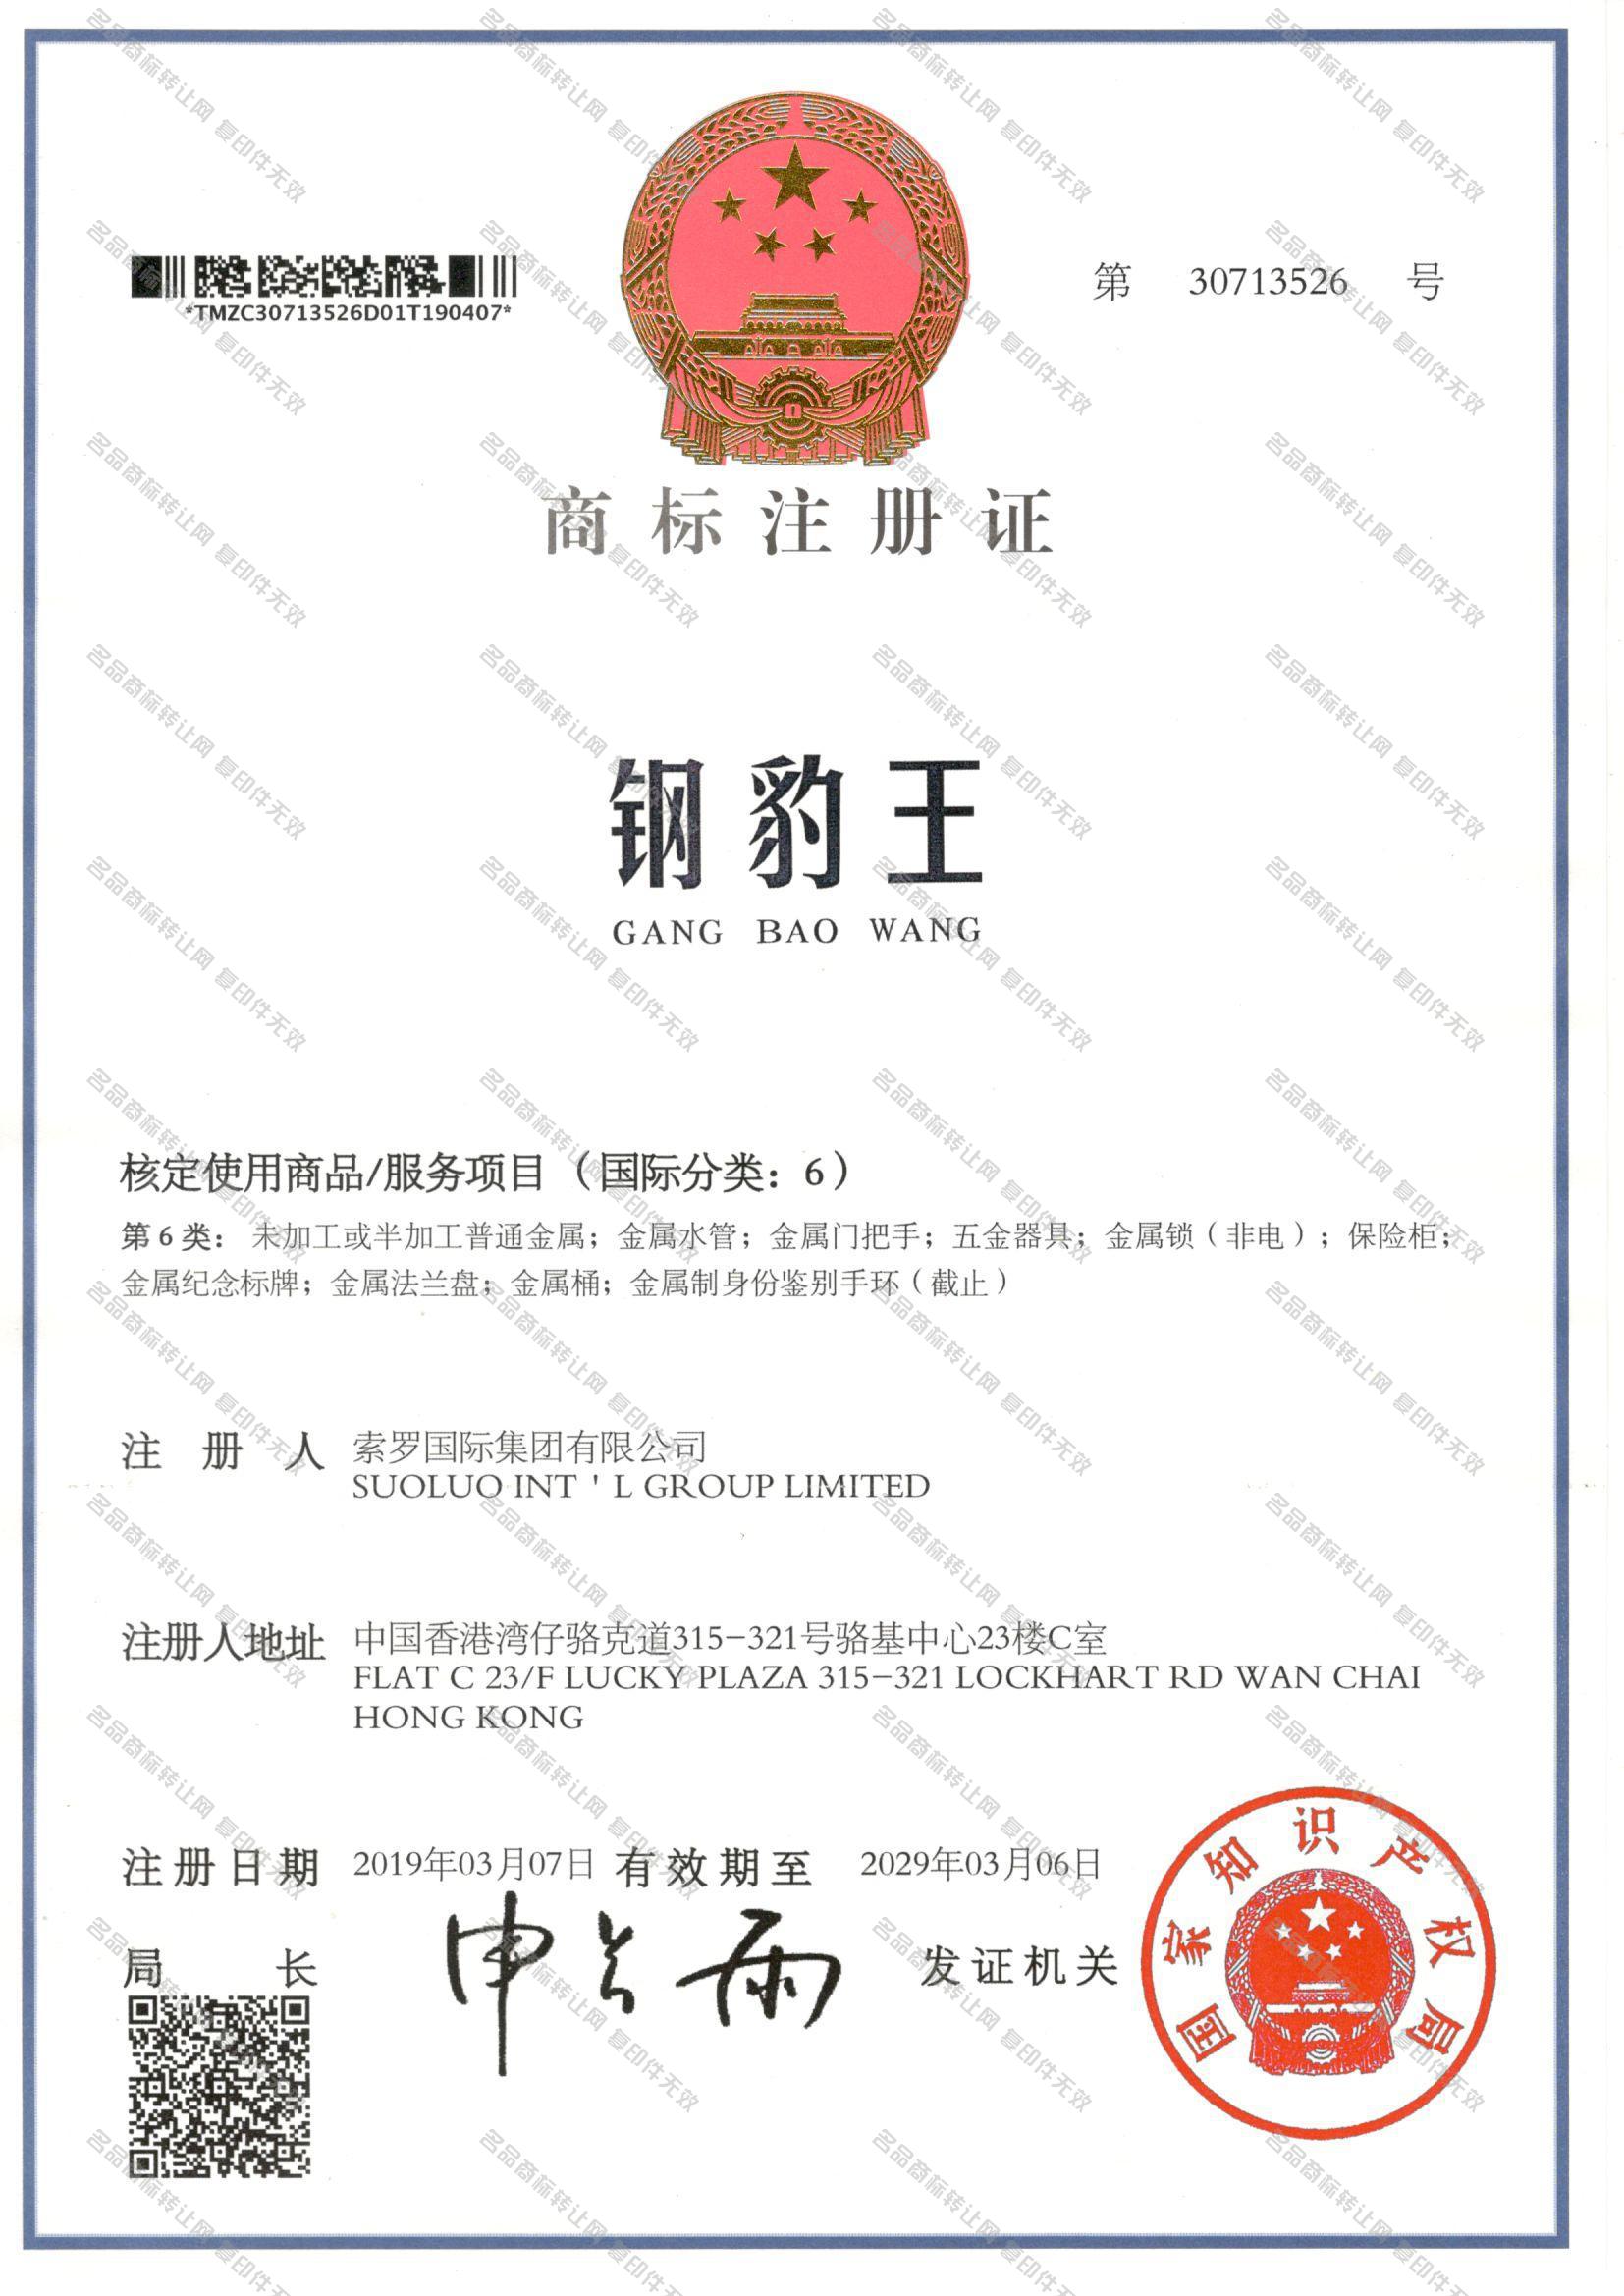 钢豹王 GANGBAOWANG注册证